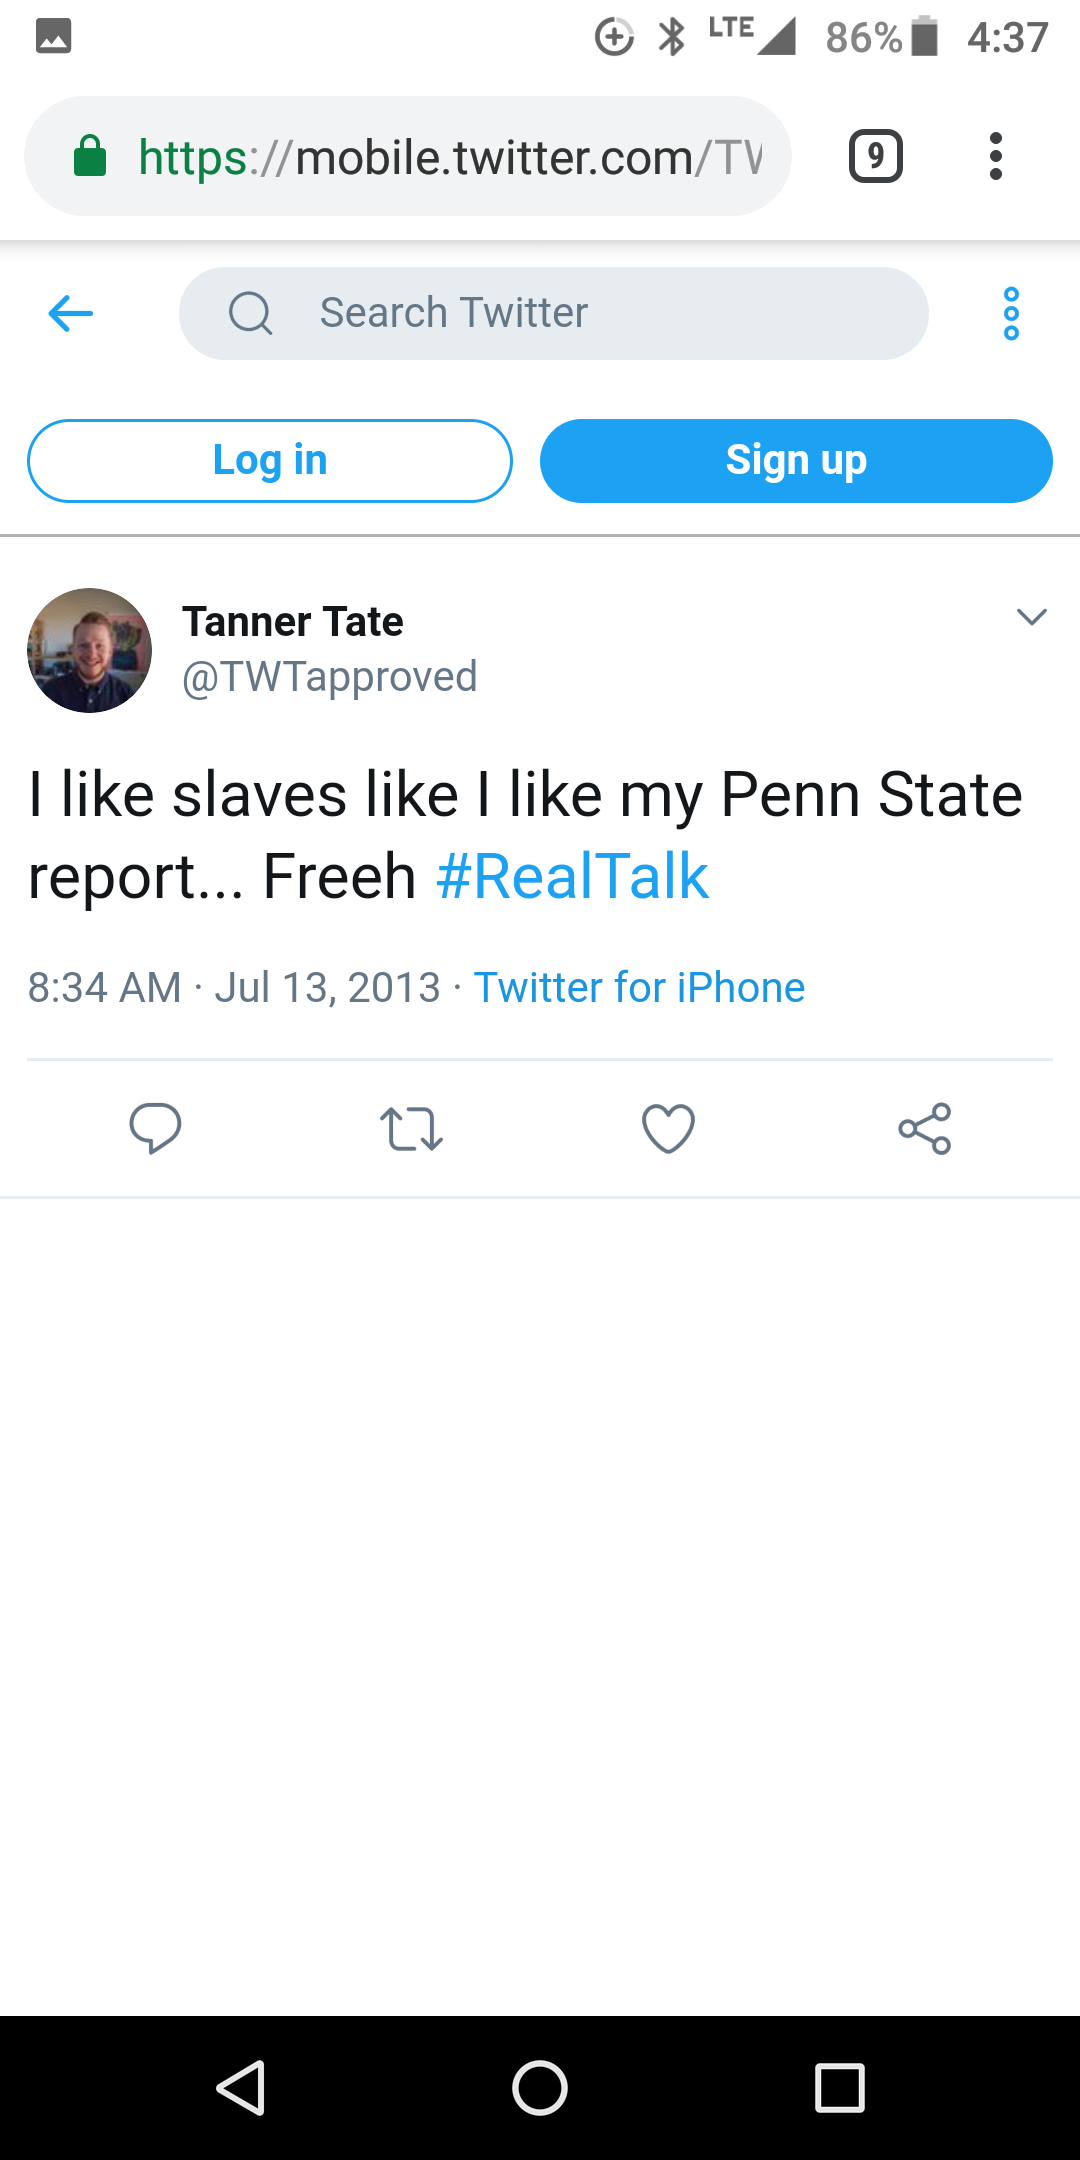 Tanner Tate's tweet